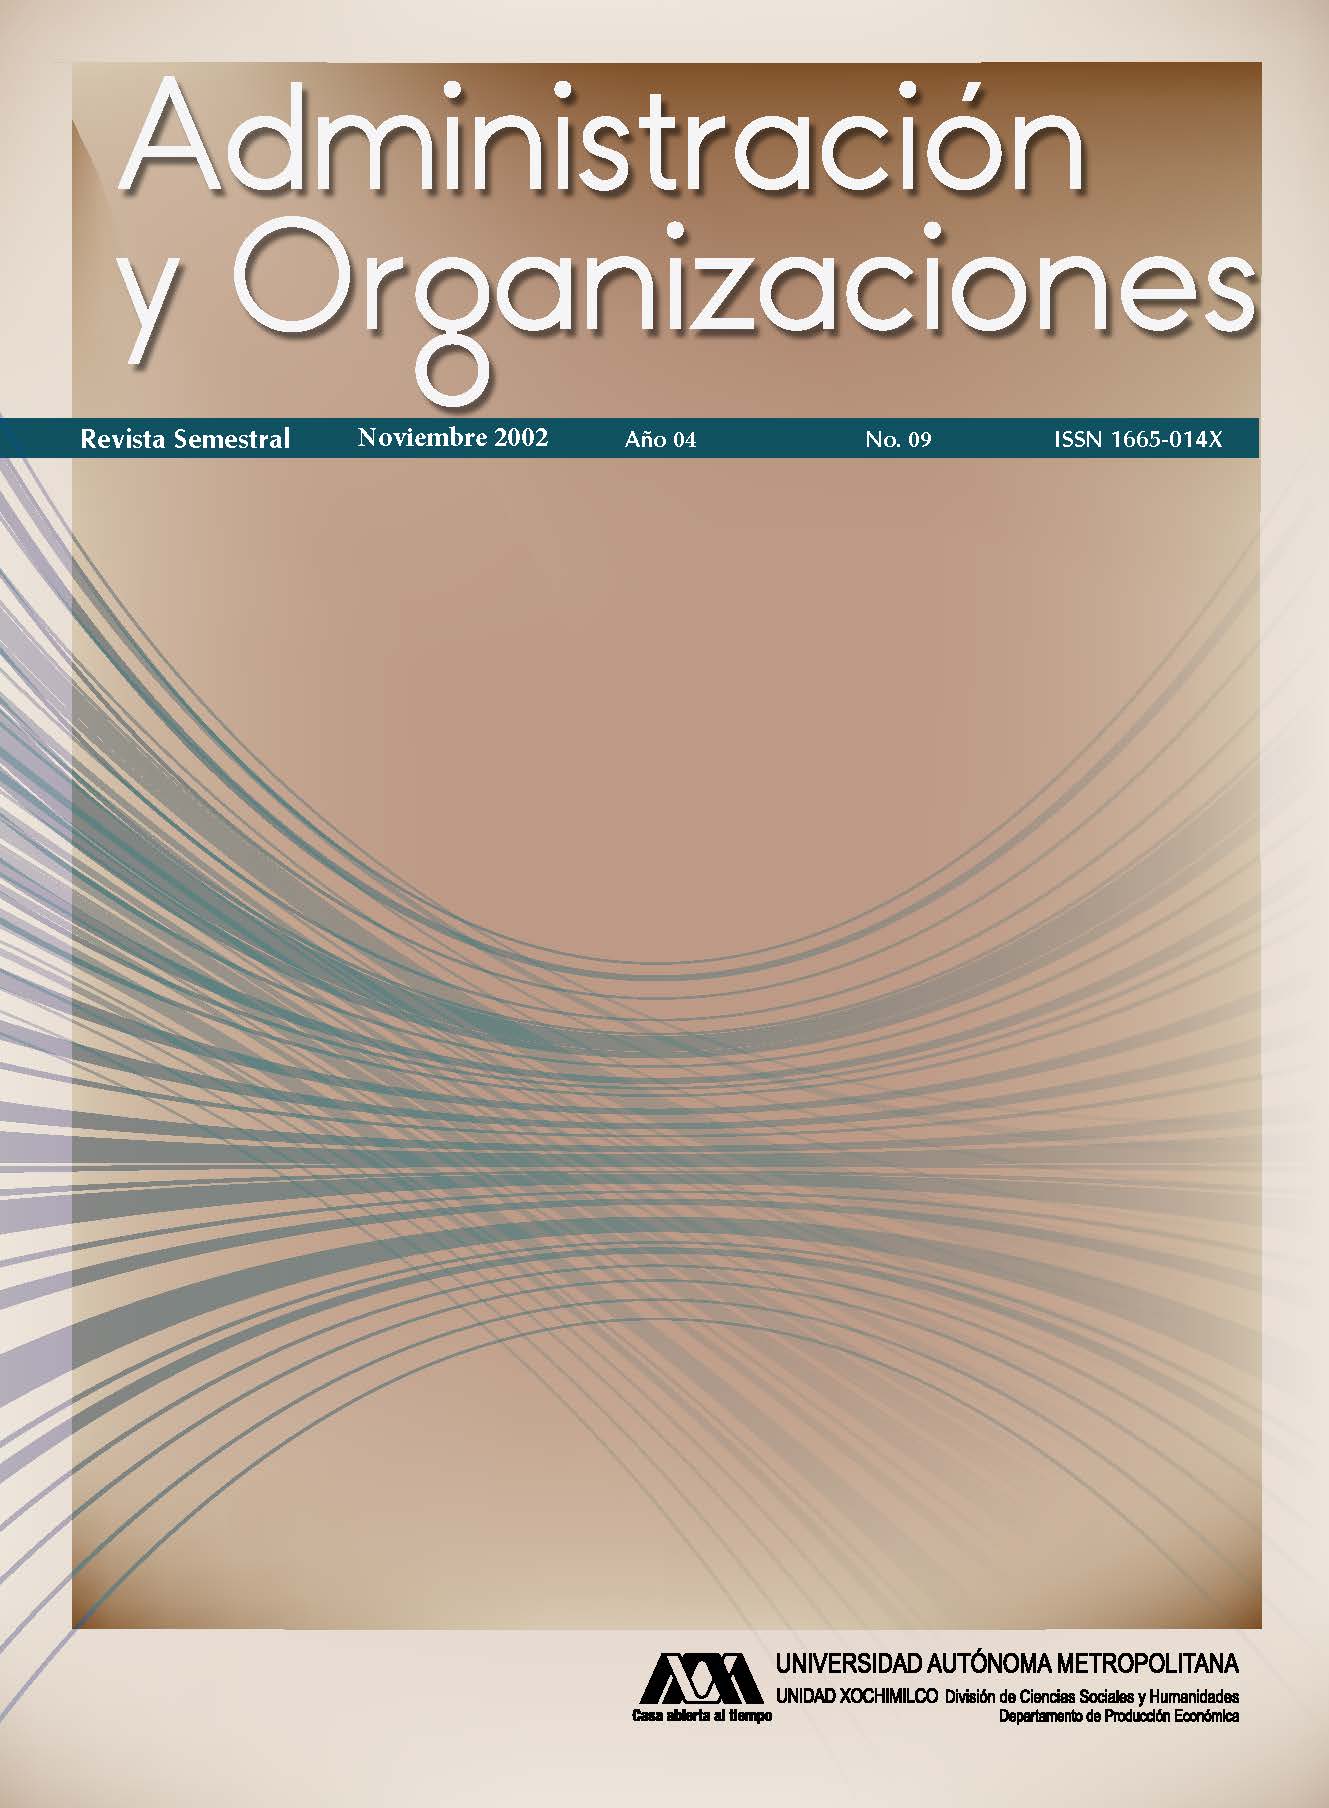 					View Vol. 4 No. 09 (4): Administración y Organizaciones
				